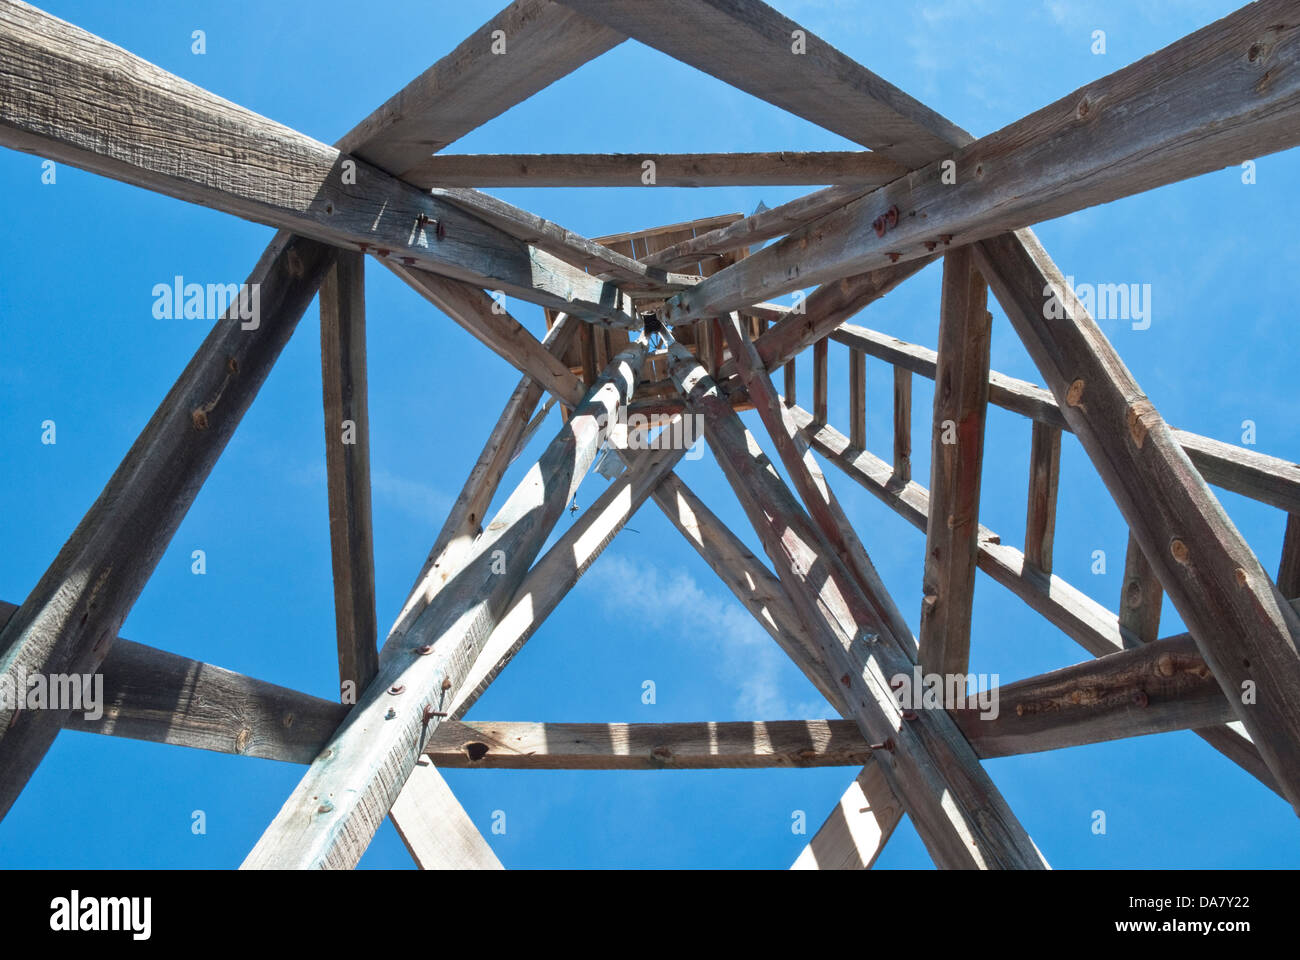 Un ancien moulin à vent a des formes géométriques fascinants vus de ci-dessous. Banque D'Images